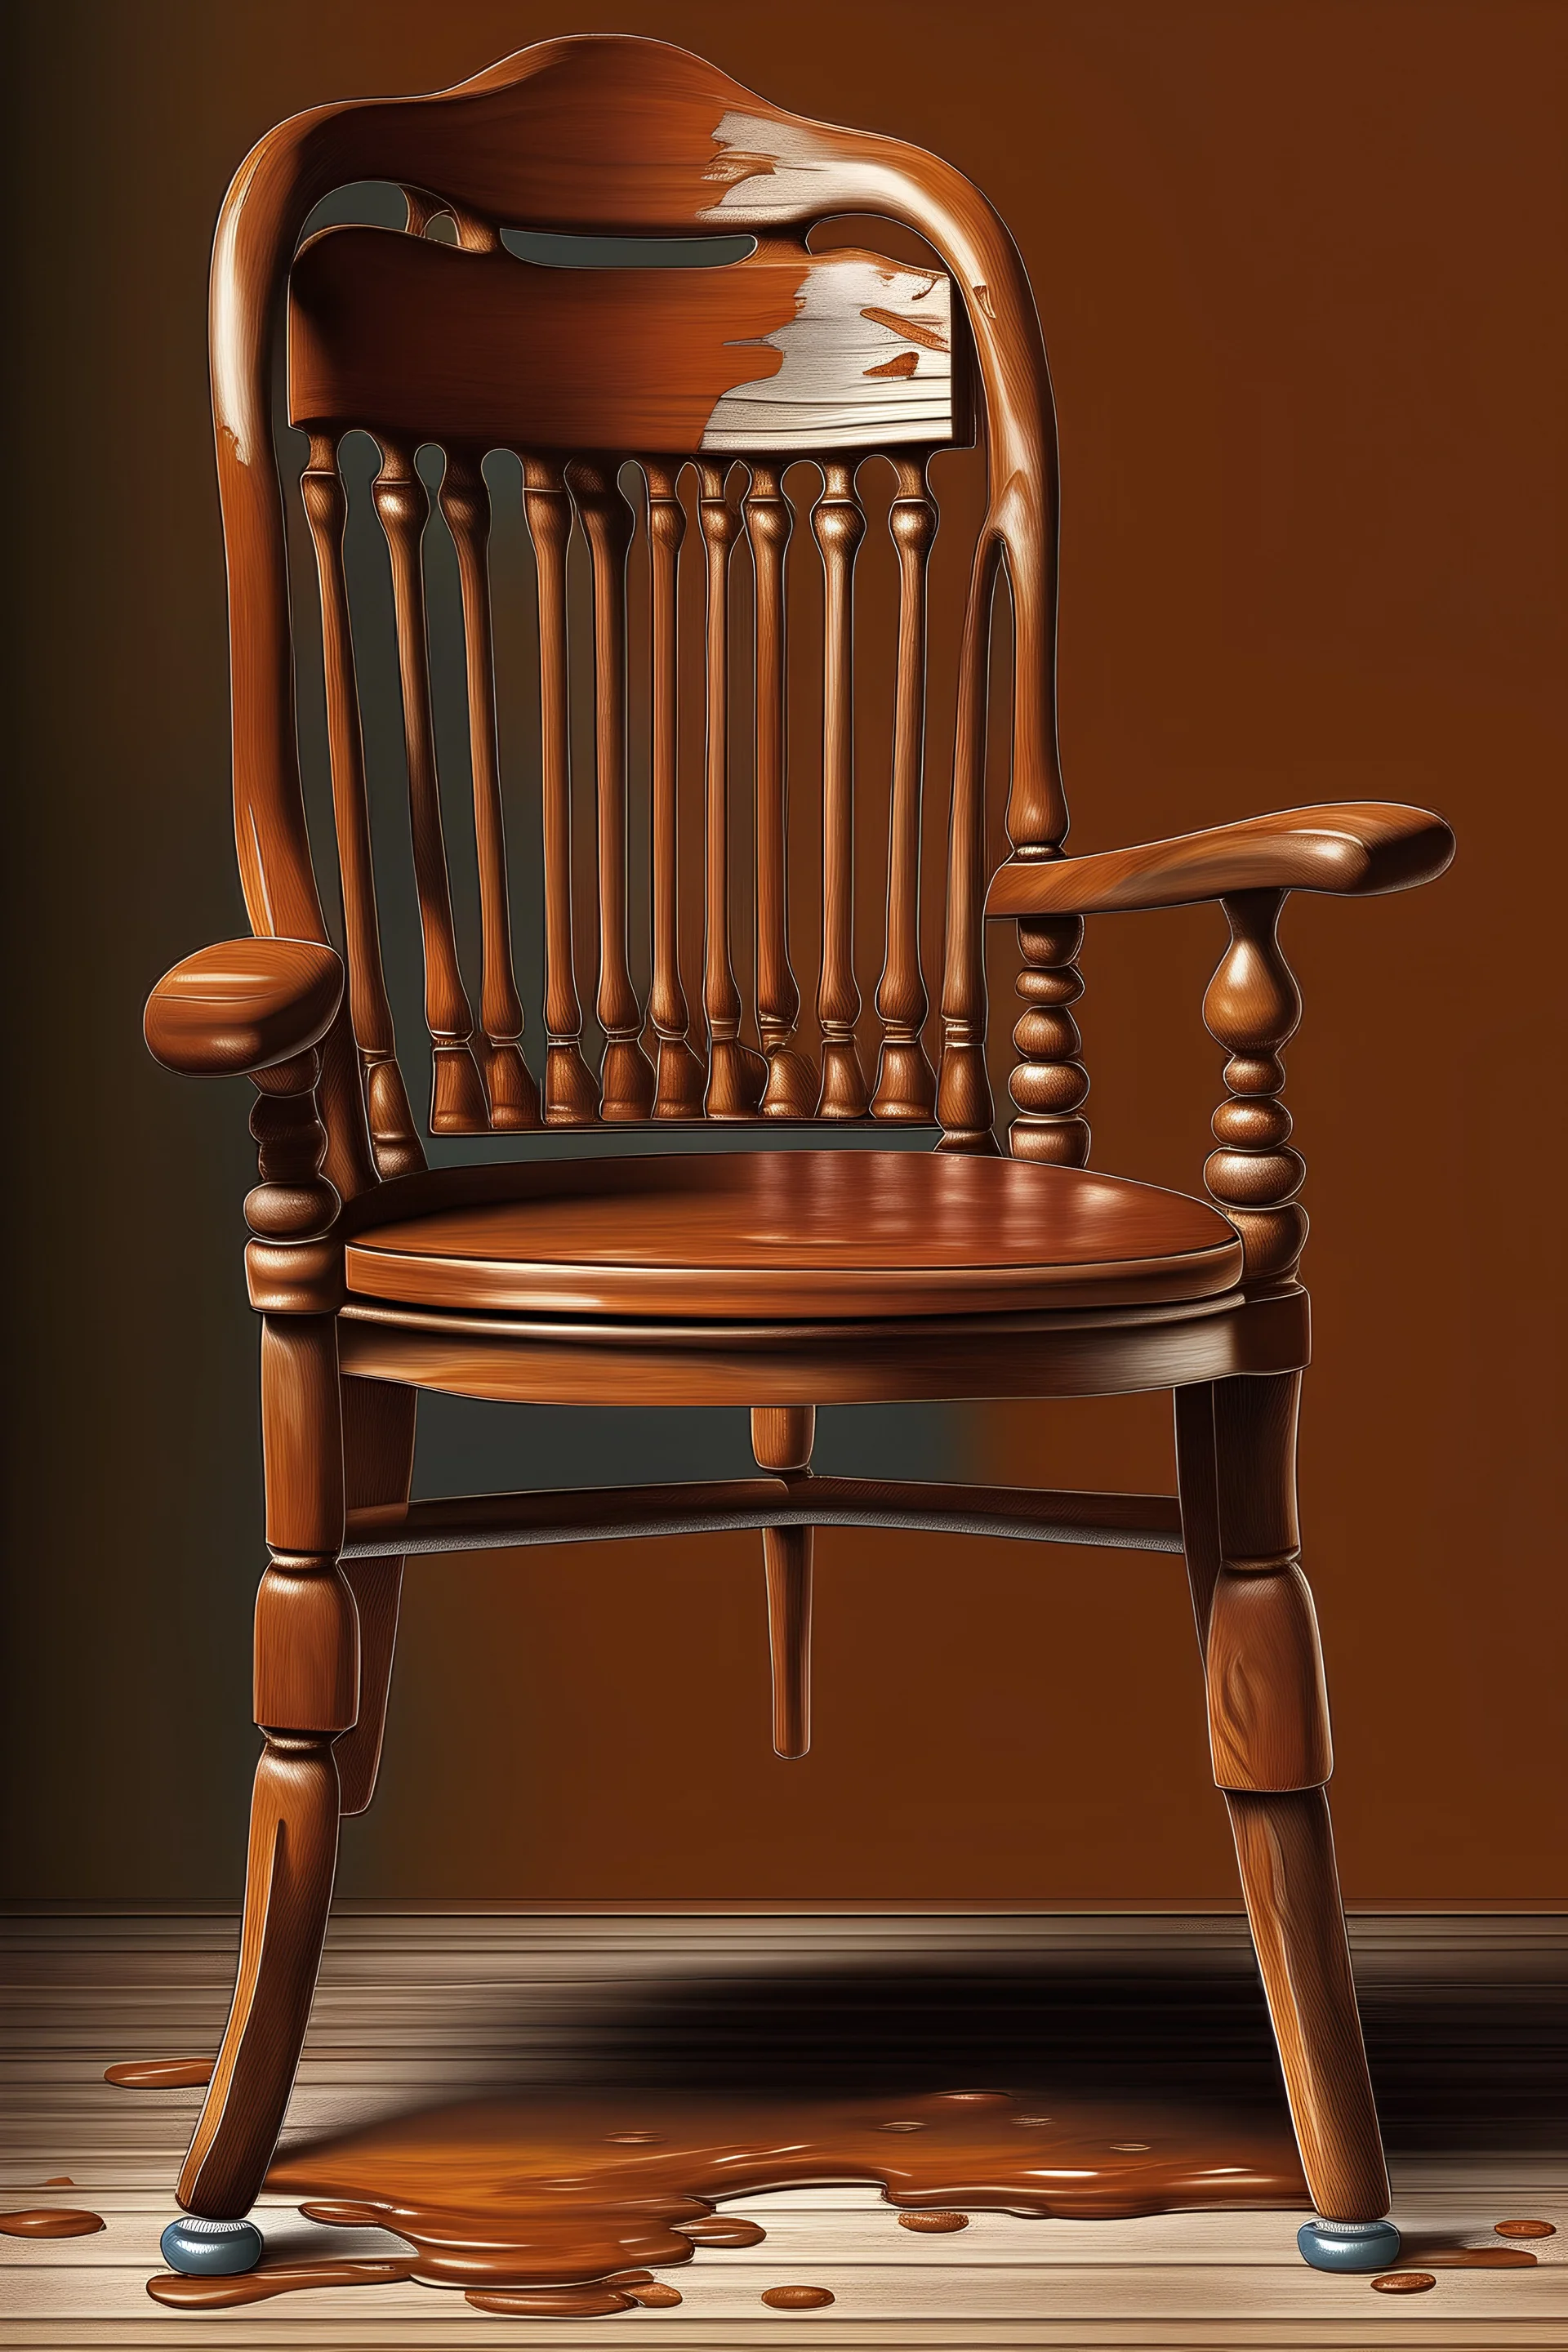 نقاشی و طراحی پوستر صندلی با رنگ قهوه ای